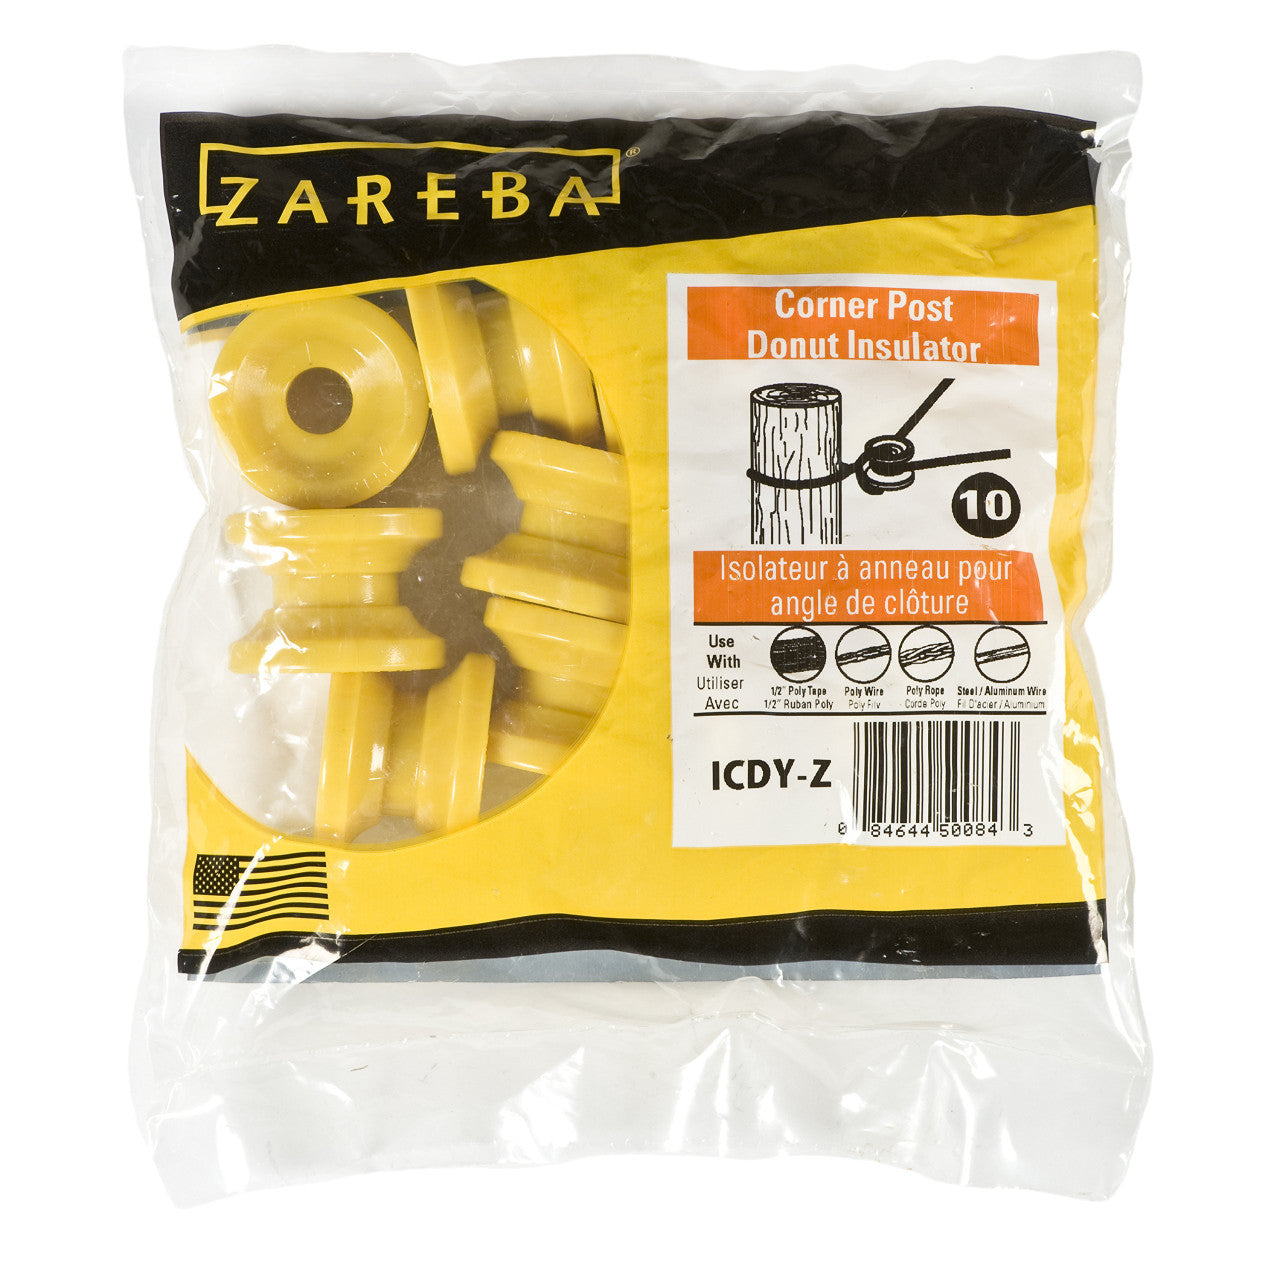 Zareba® Corner Post Donut Insulator ICDY-Z 10PK